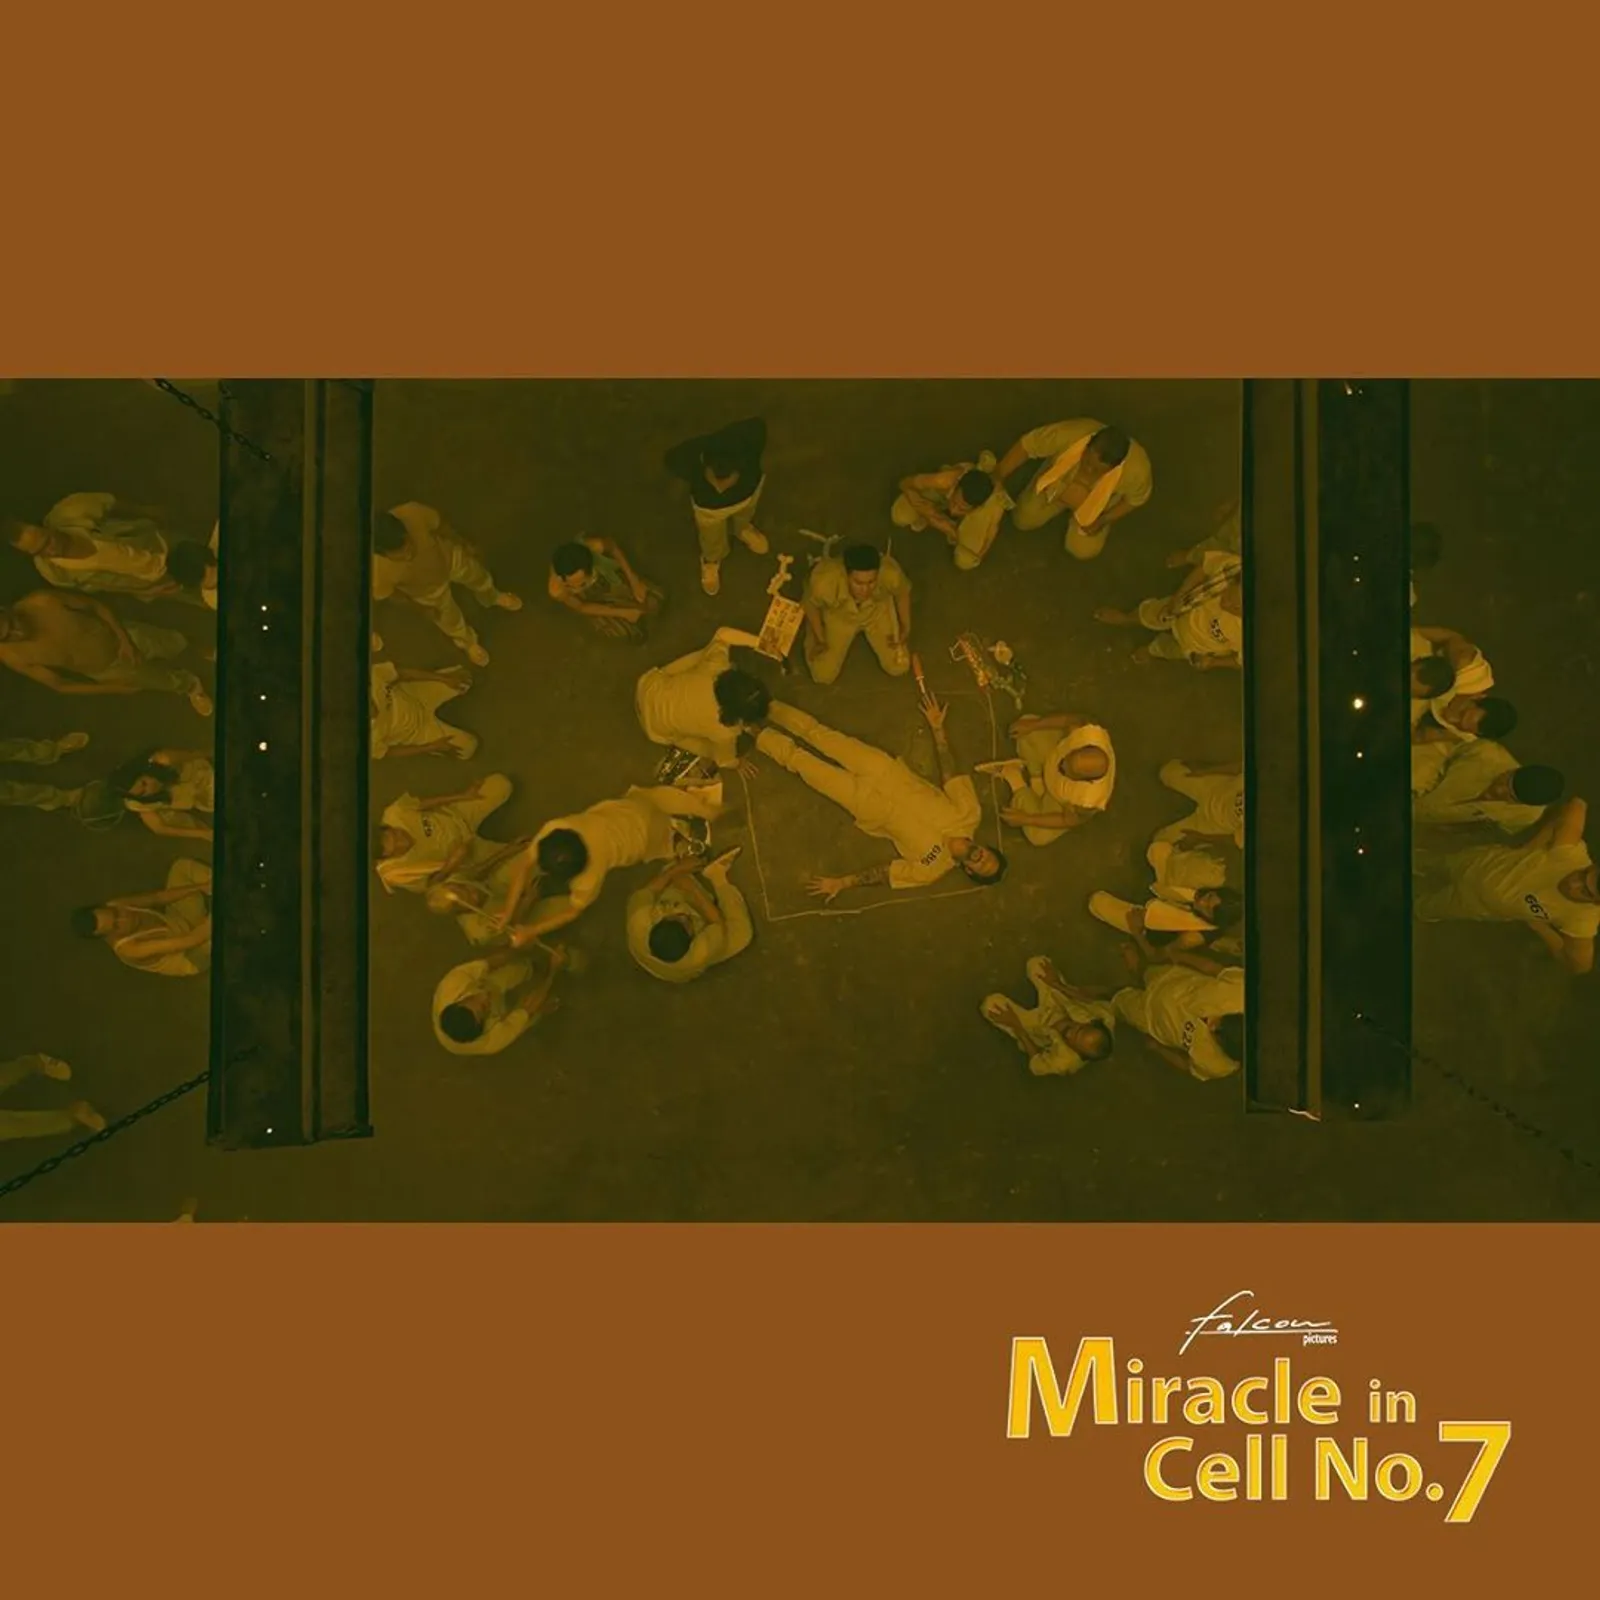 11 Foto Adegan Film Miracle in Cell No.7 yang Dijamin Bikin Nangis